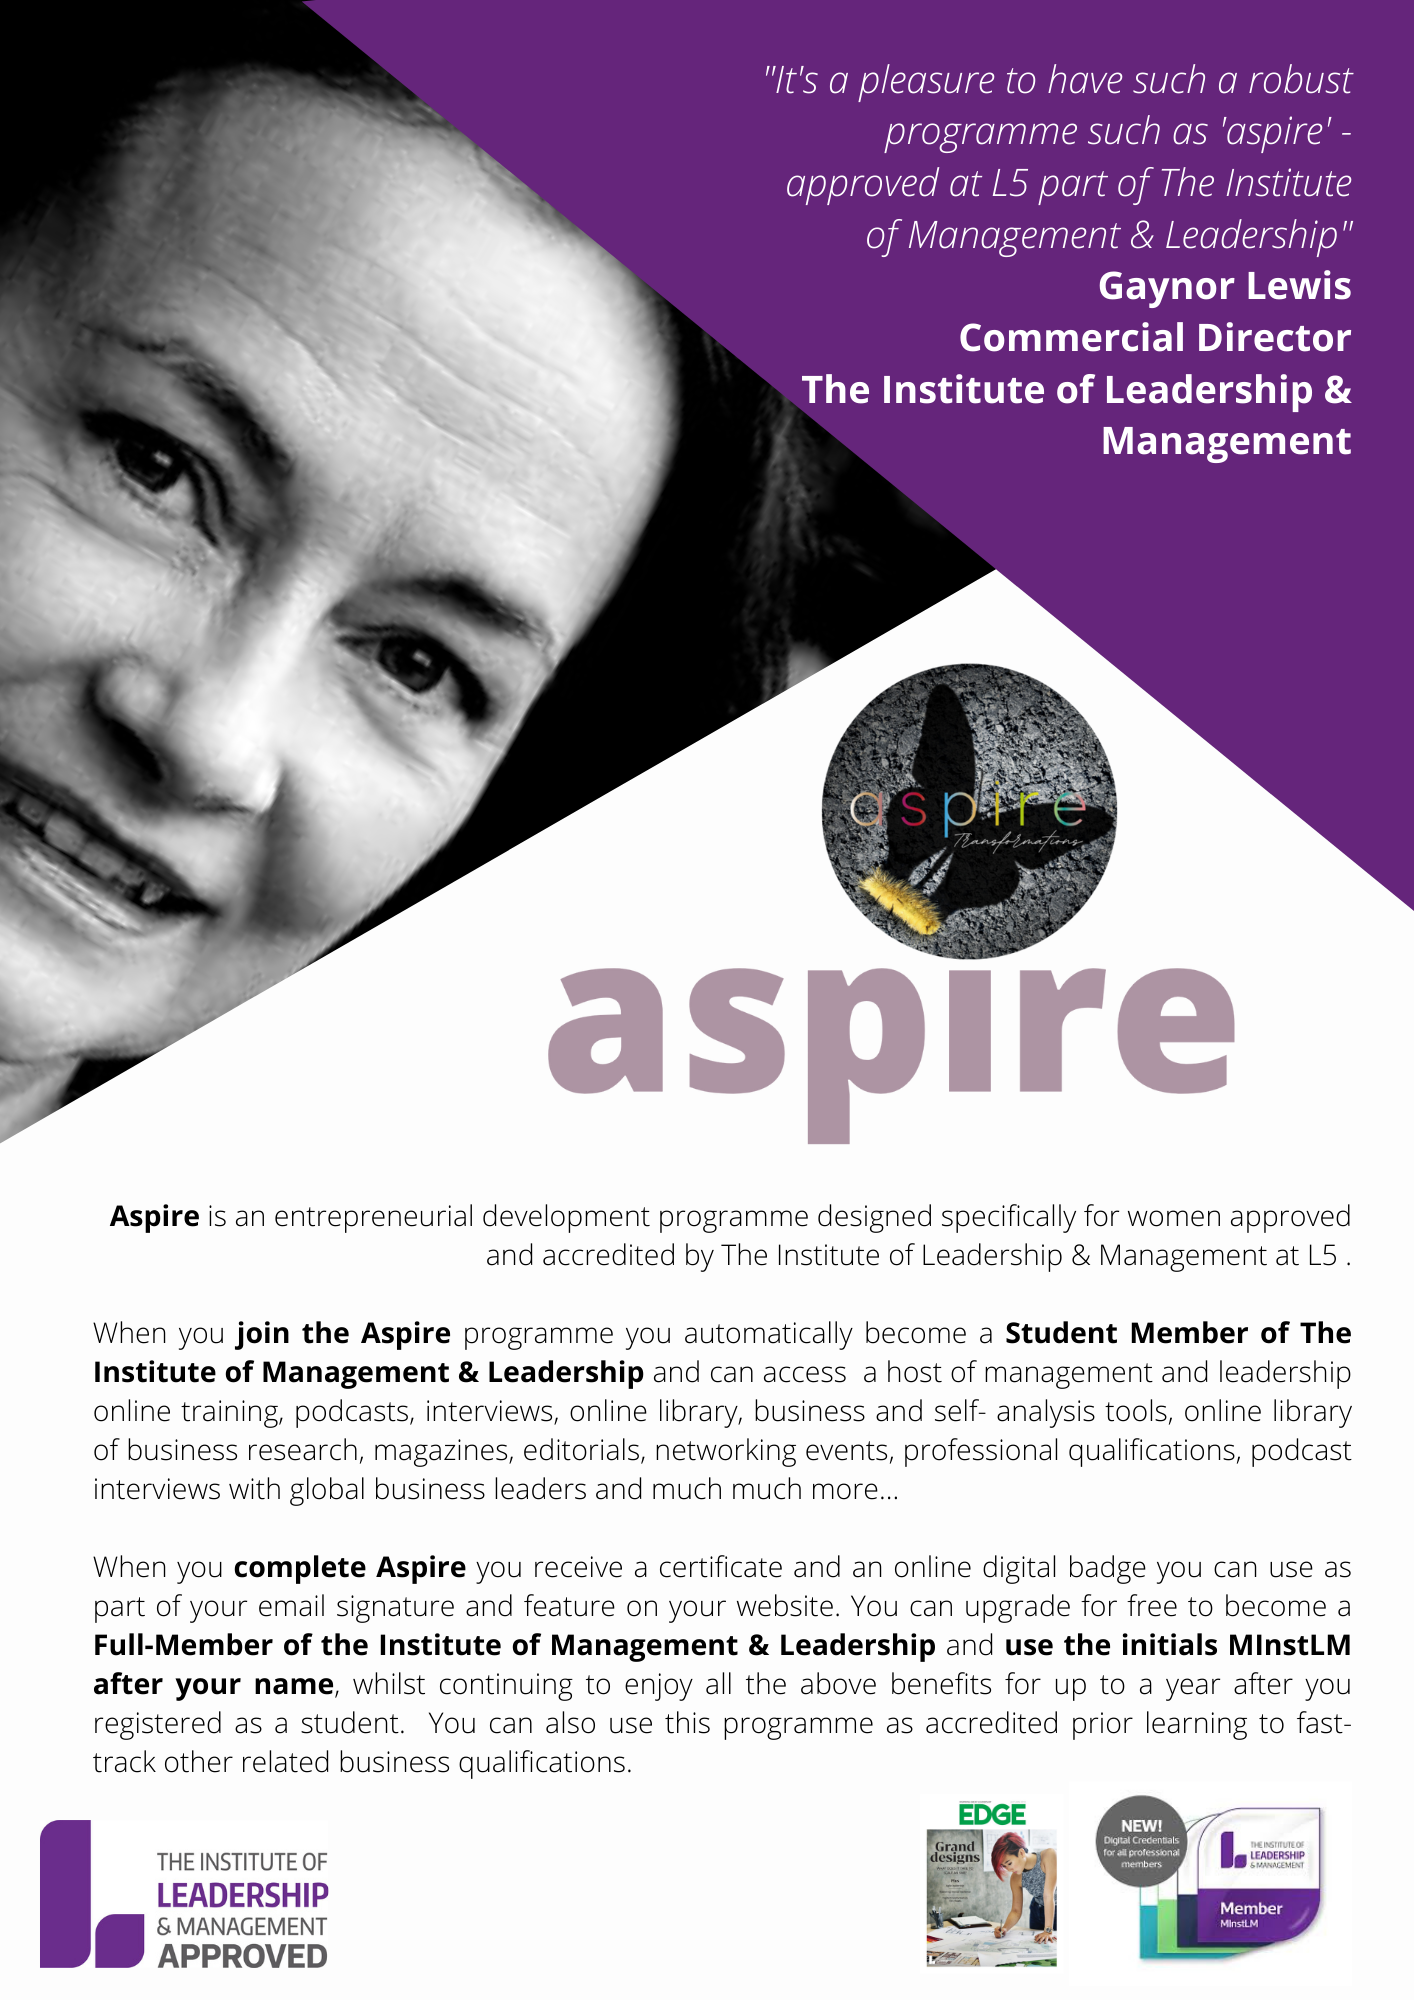 aspire - institute of leadership & management